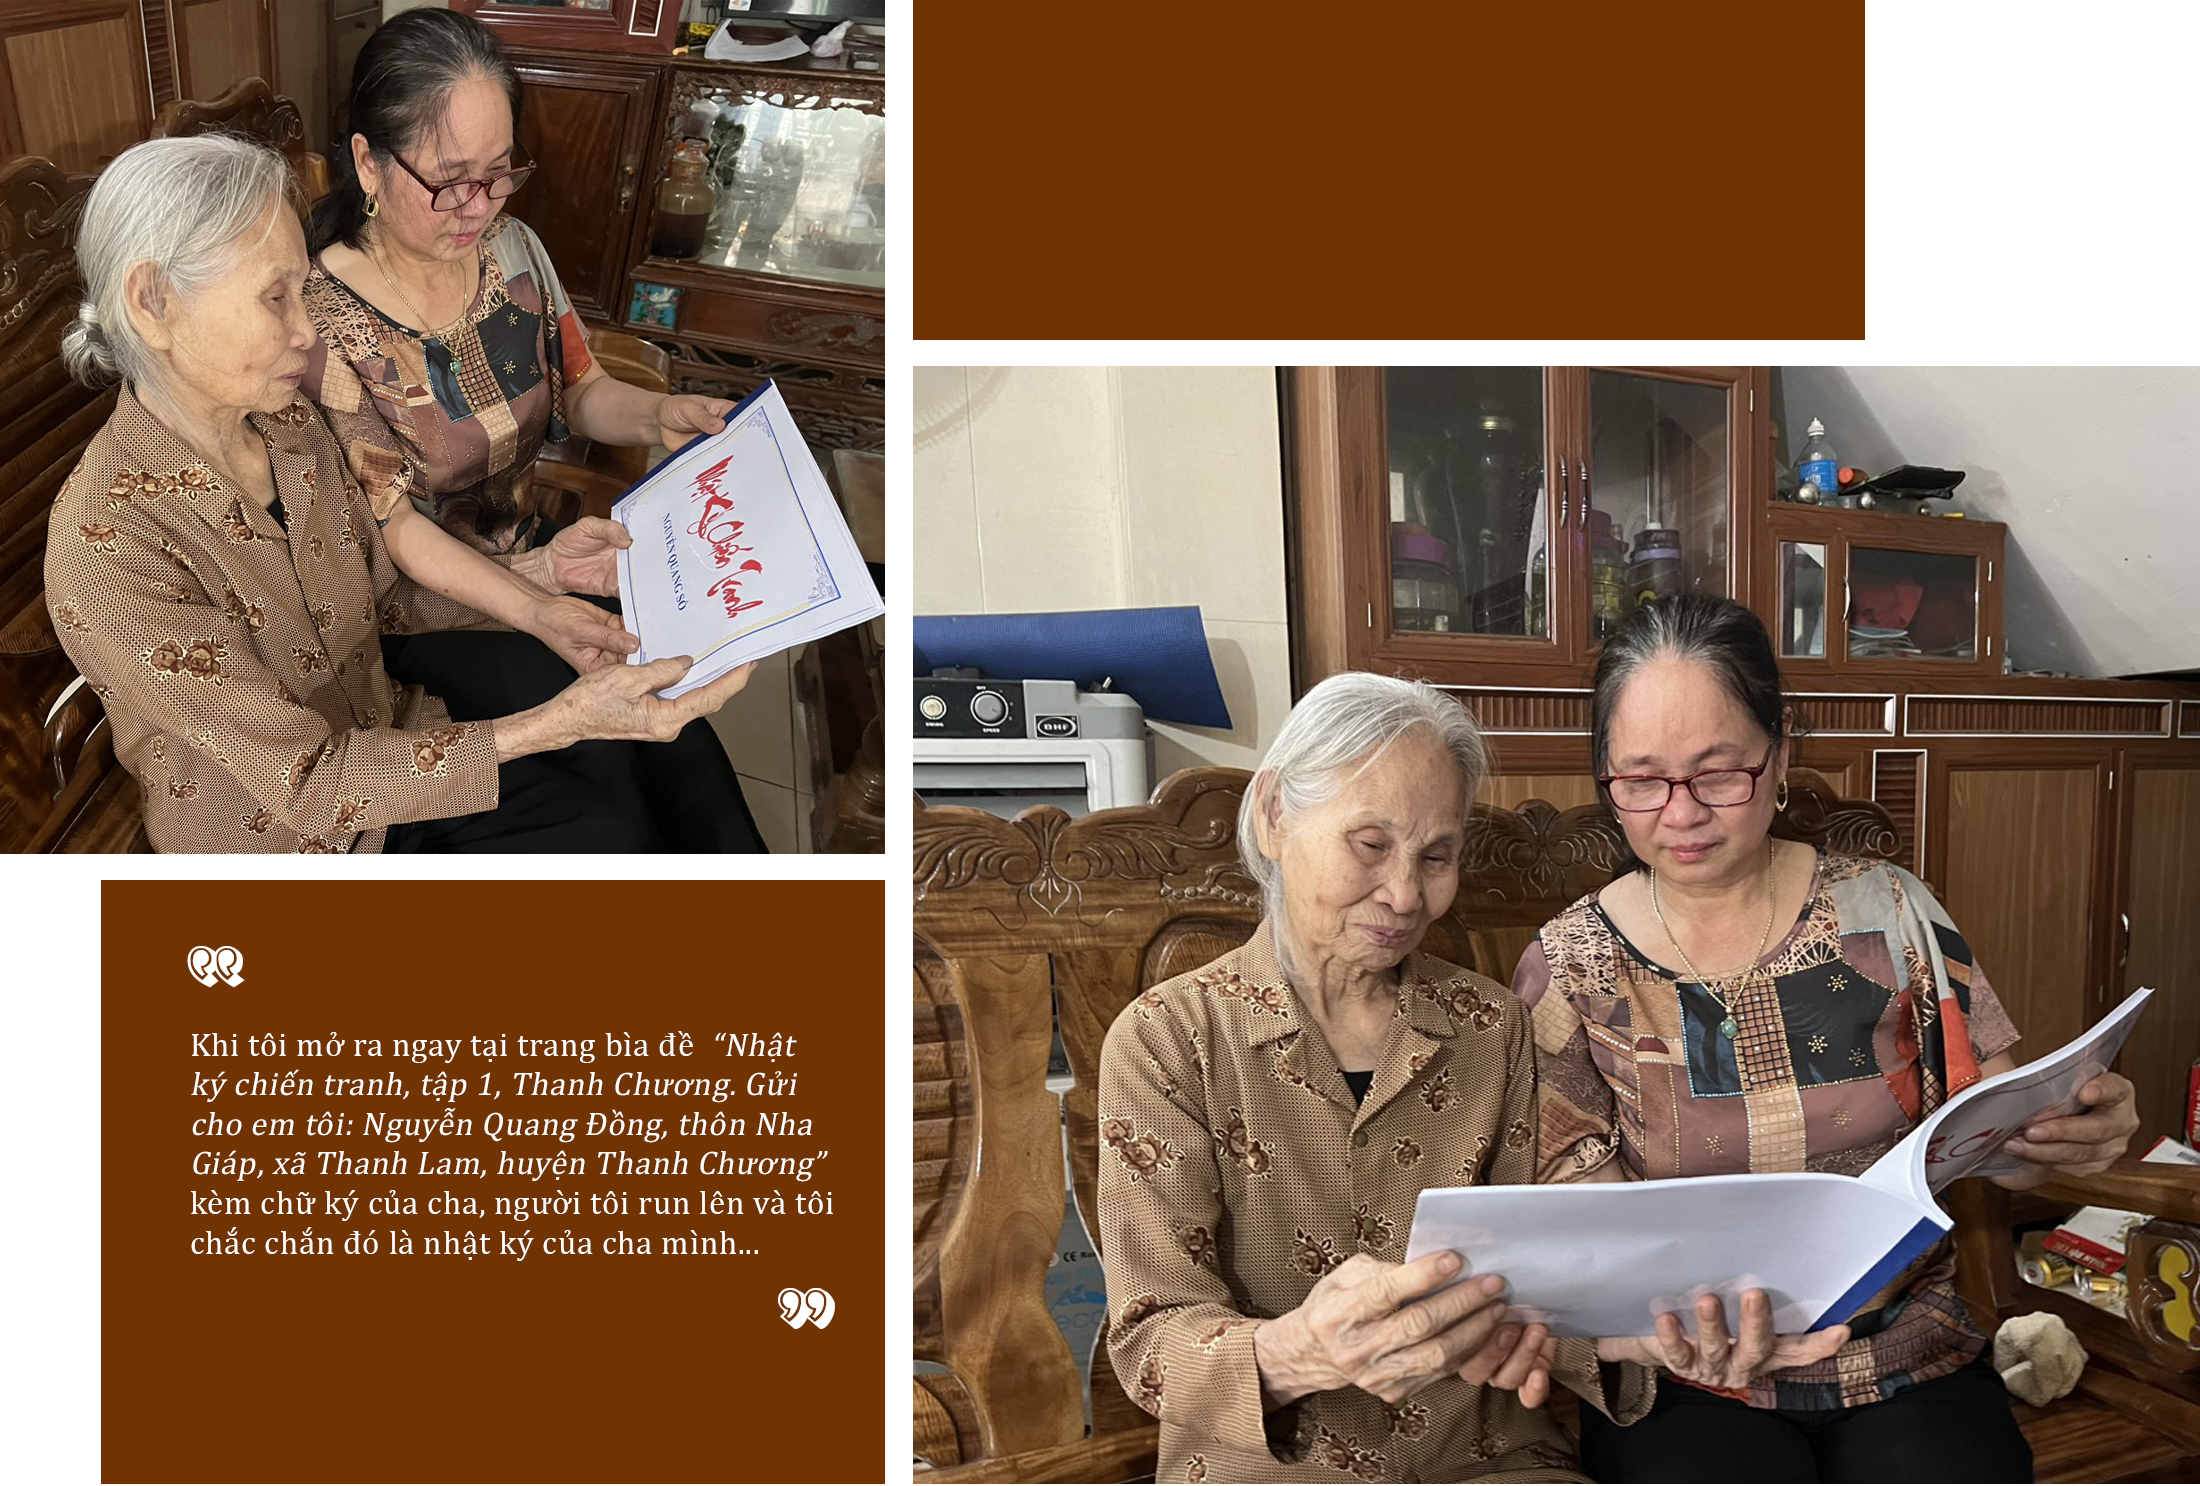 Bà Nguyễn Thị Hoa cùng mẹ (cụ Nguyễn Thị Lục) nâng niu cuốn nhật ký của cha.